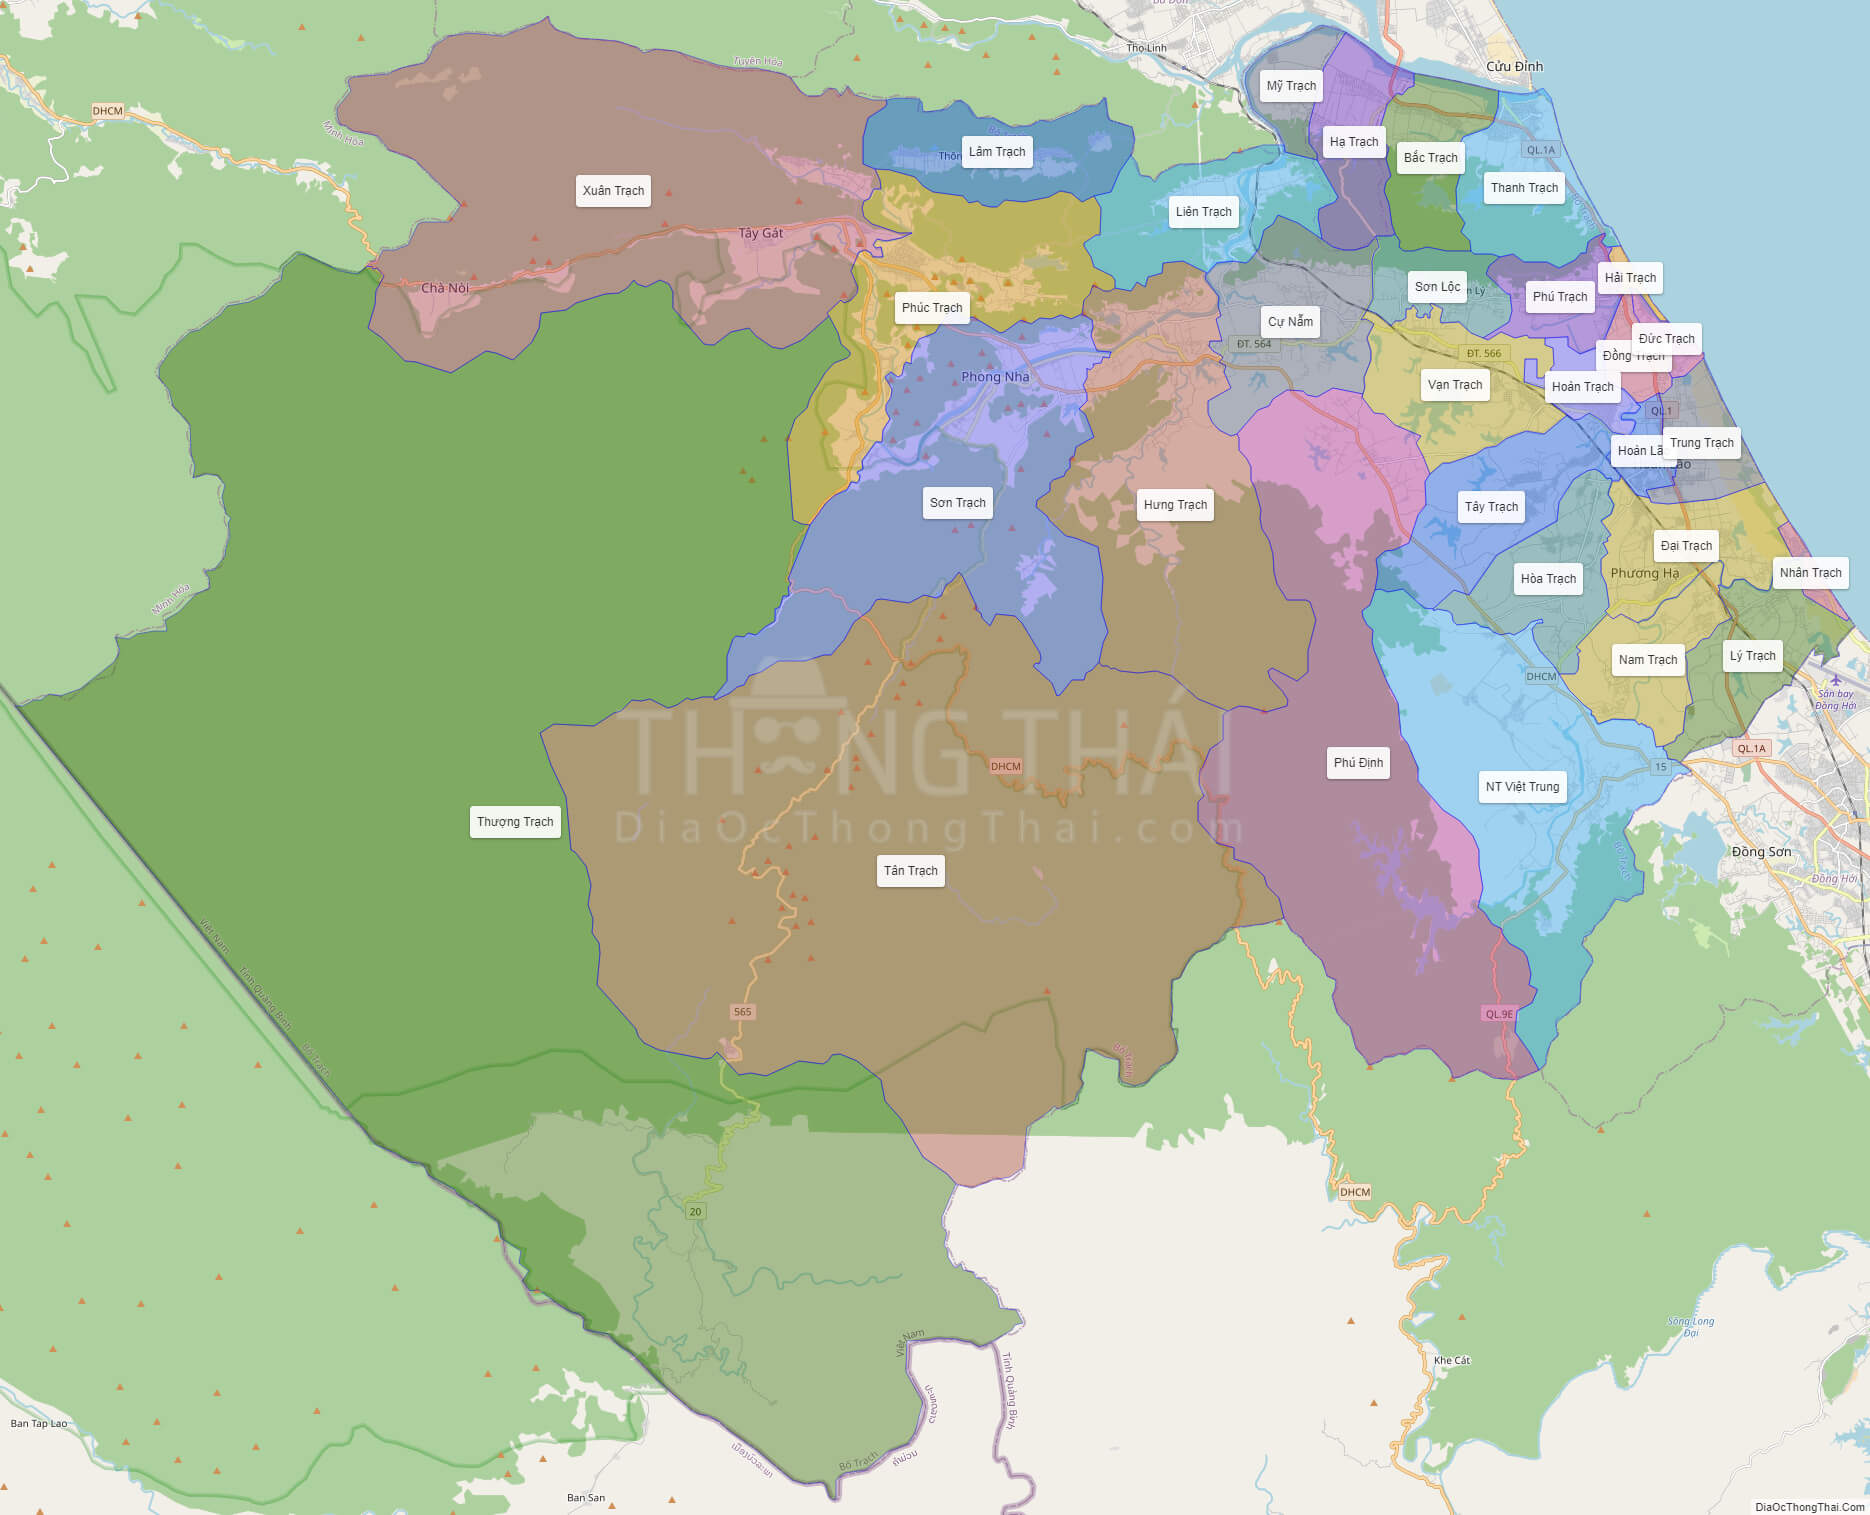 Bản đồ huyện Bố Trạch Quảng Bình dự án 2024 sẽ giúp bạn tìm hiểu về những kế hoạch đang được triển khai tại địa phương. Từ các dự án du lịch đến các dự án phát triển kinh tế, bạn sẽ có một cái nhìn tổng thể về tiềm năng của huyện Bố Trạch và Quảng Bình.